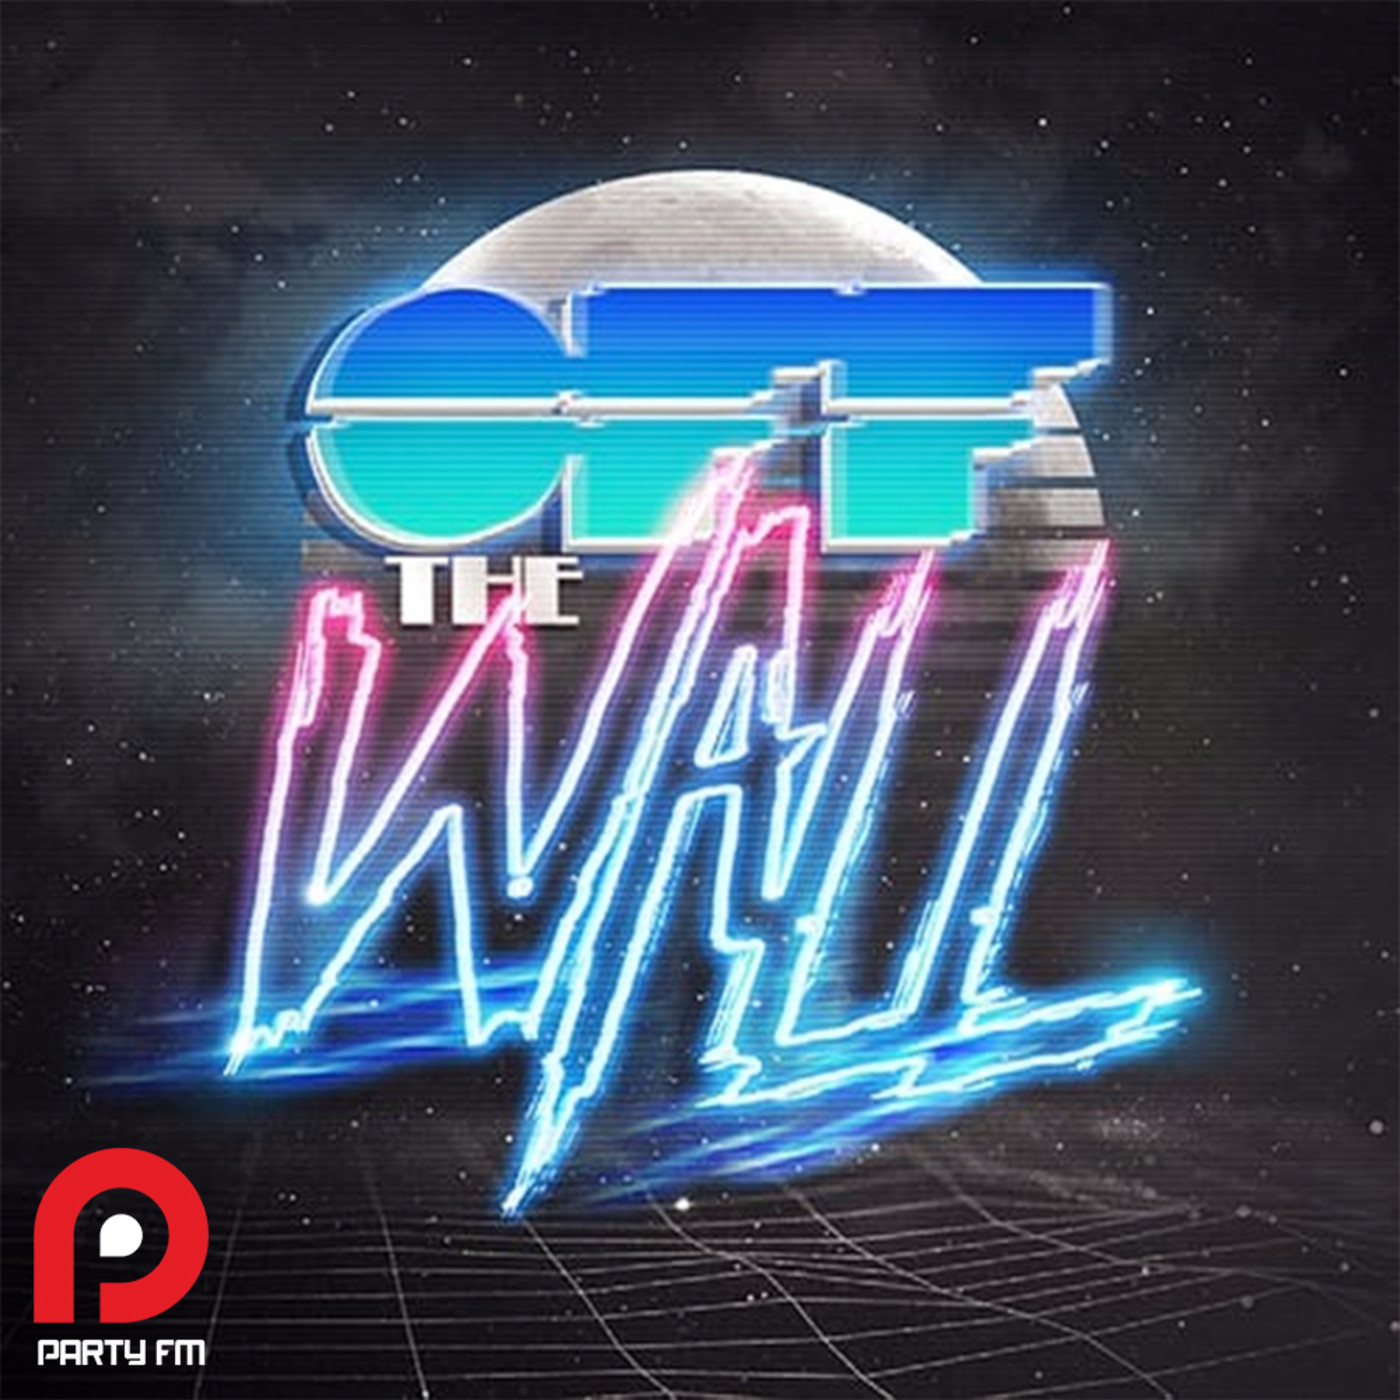 OFF THE WALL! by DJ Jooz